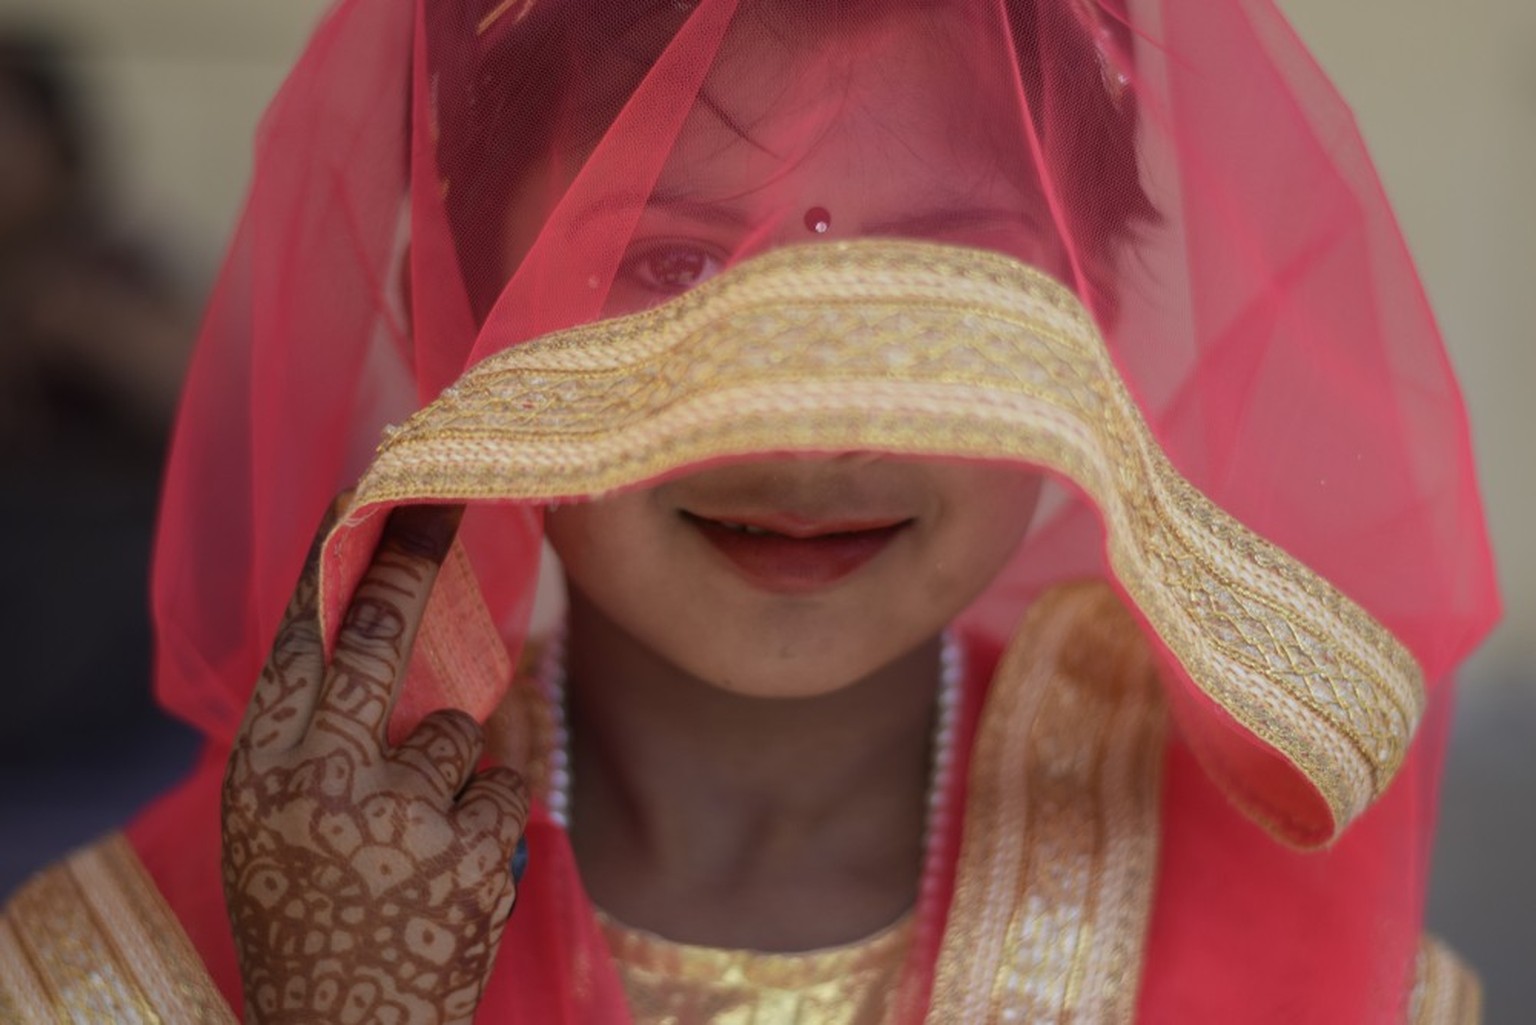 Kinderheirat child marriage